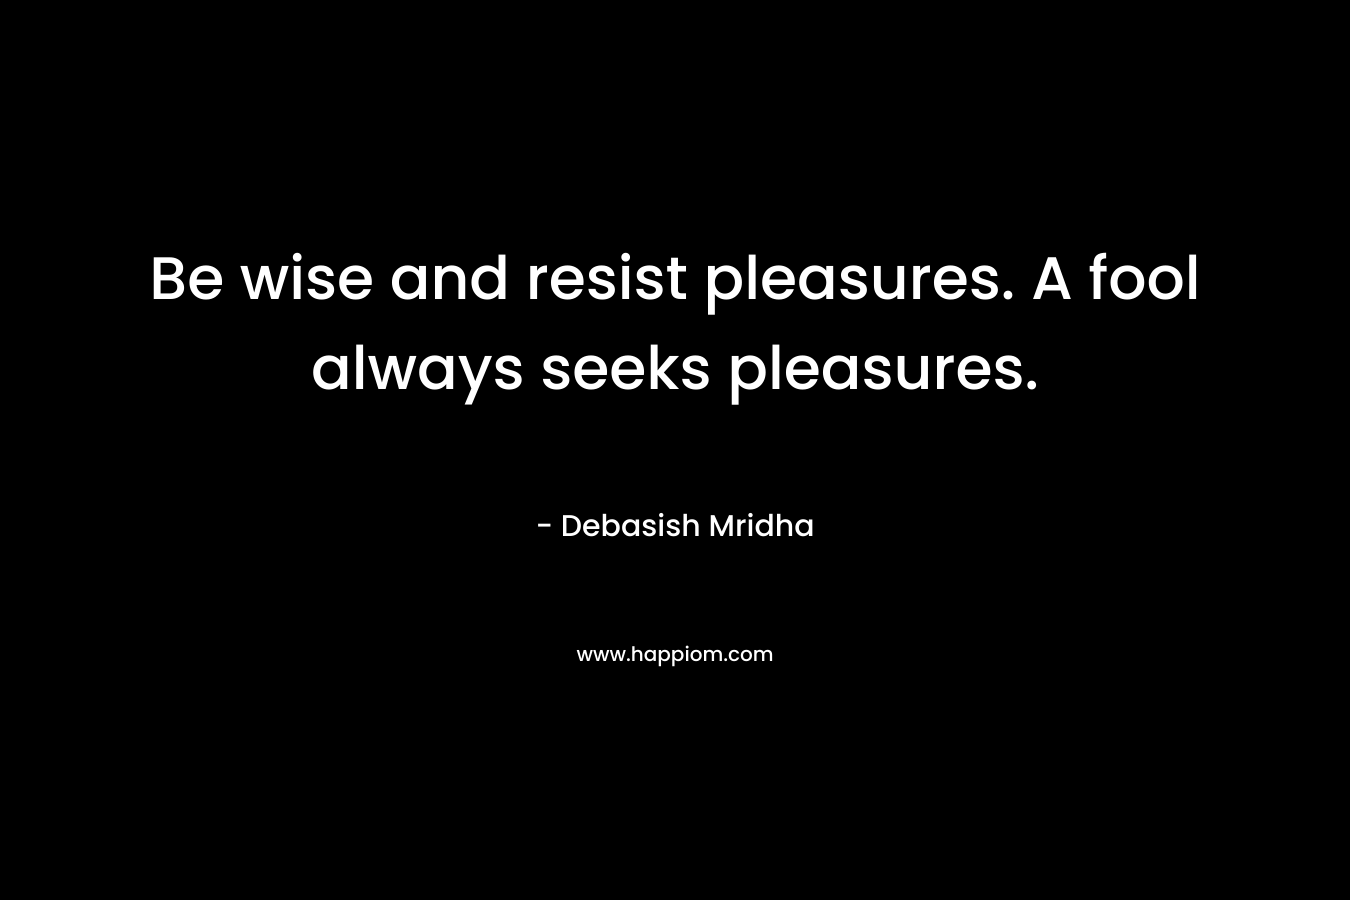 Be wise and resist pleasures. A fool always seeks pleasures.